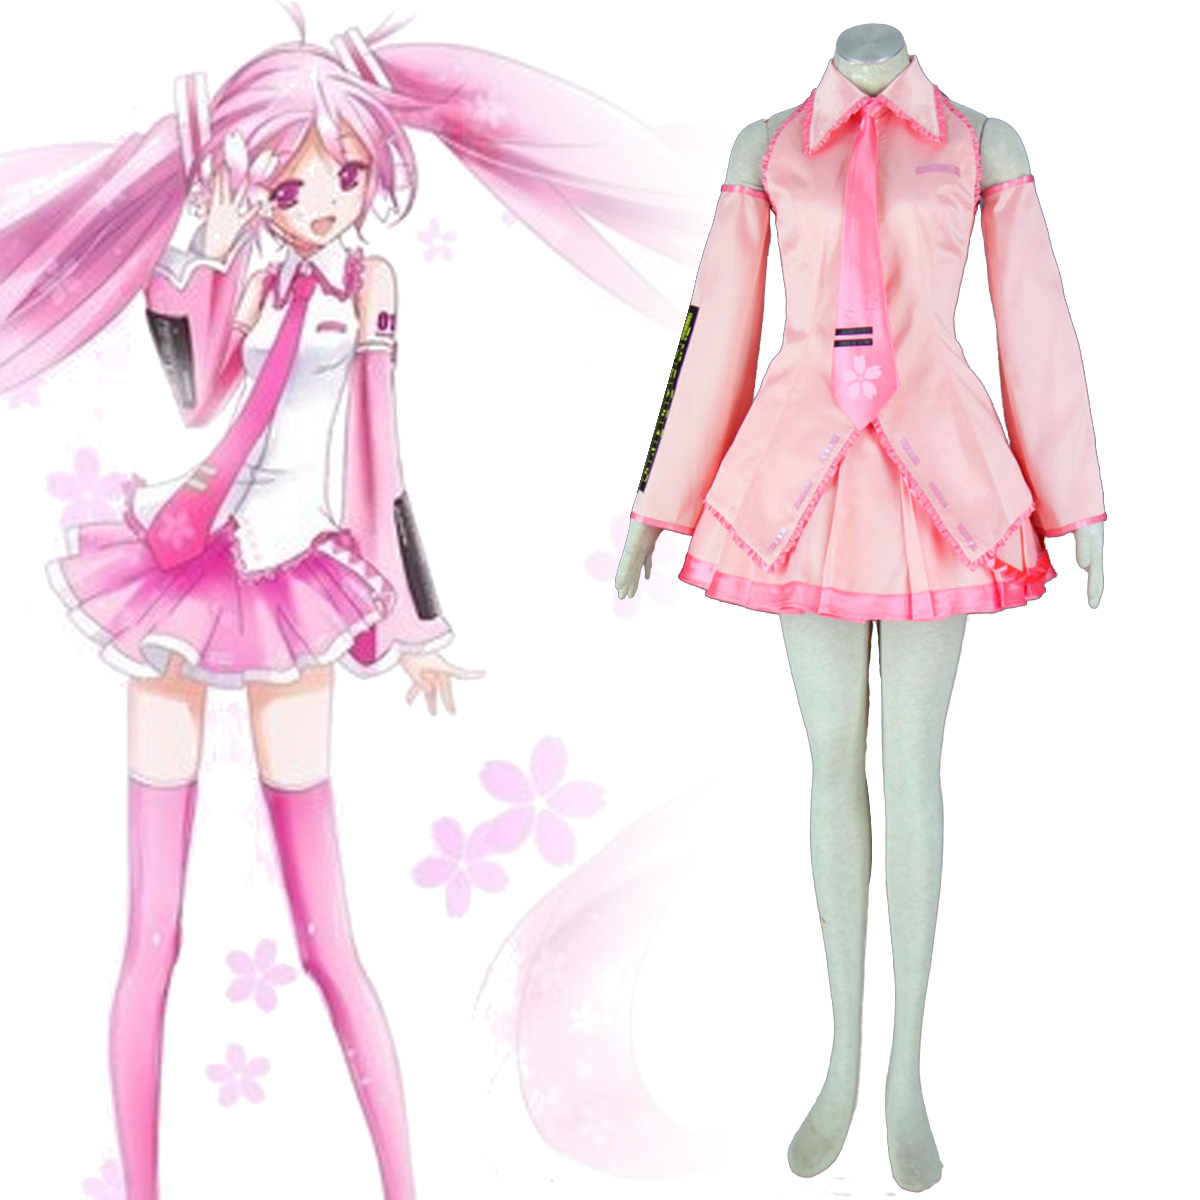 Kläder Vocaloid Sakura Hatsune Miku 1 Cosplay Karneval Kläder